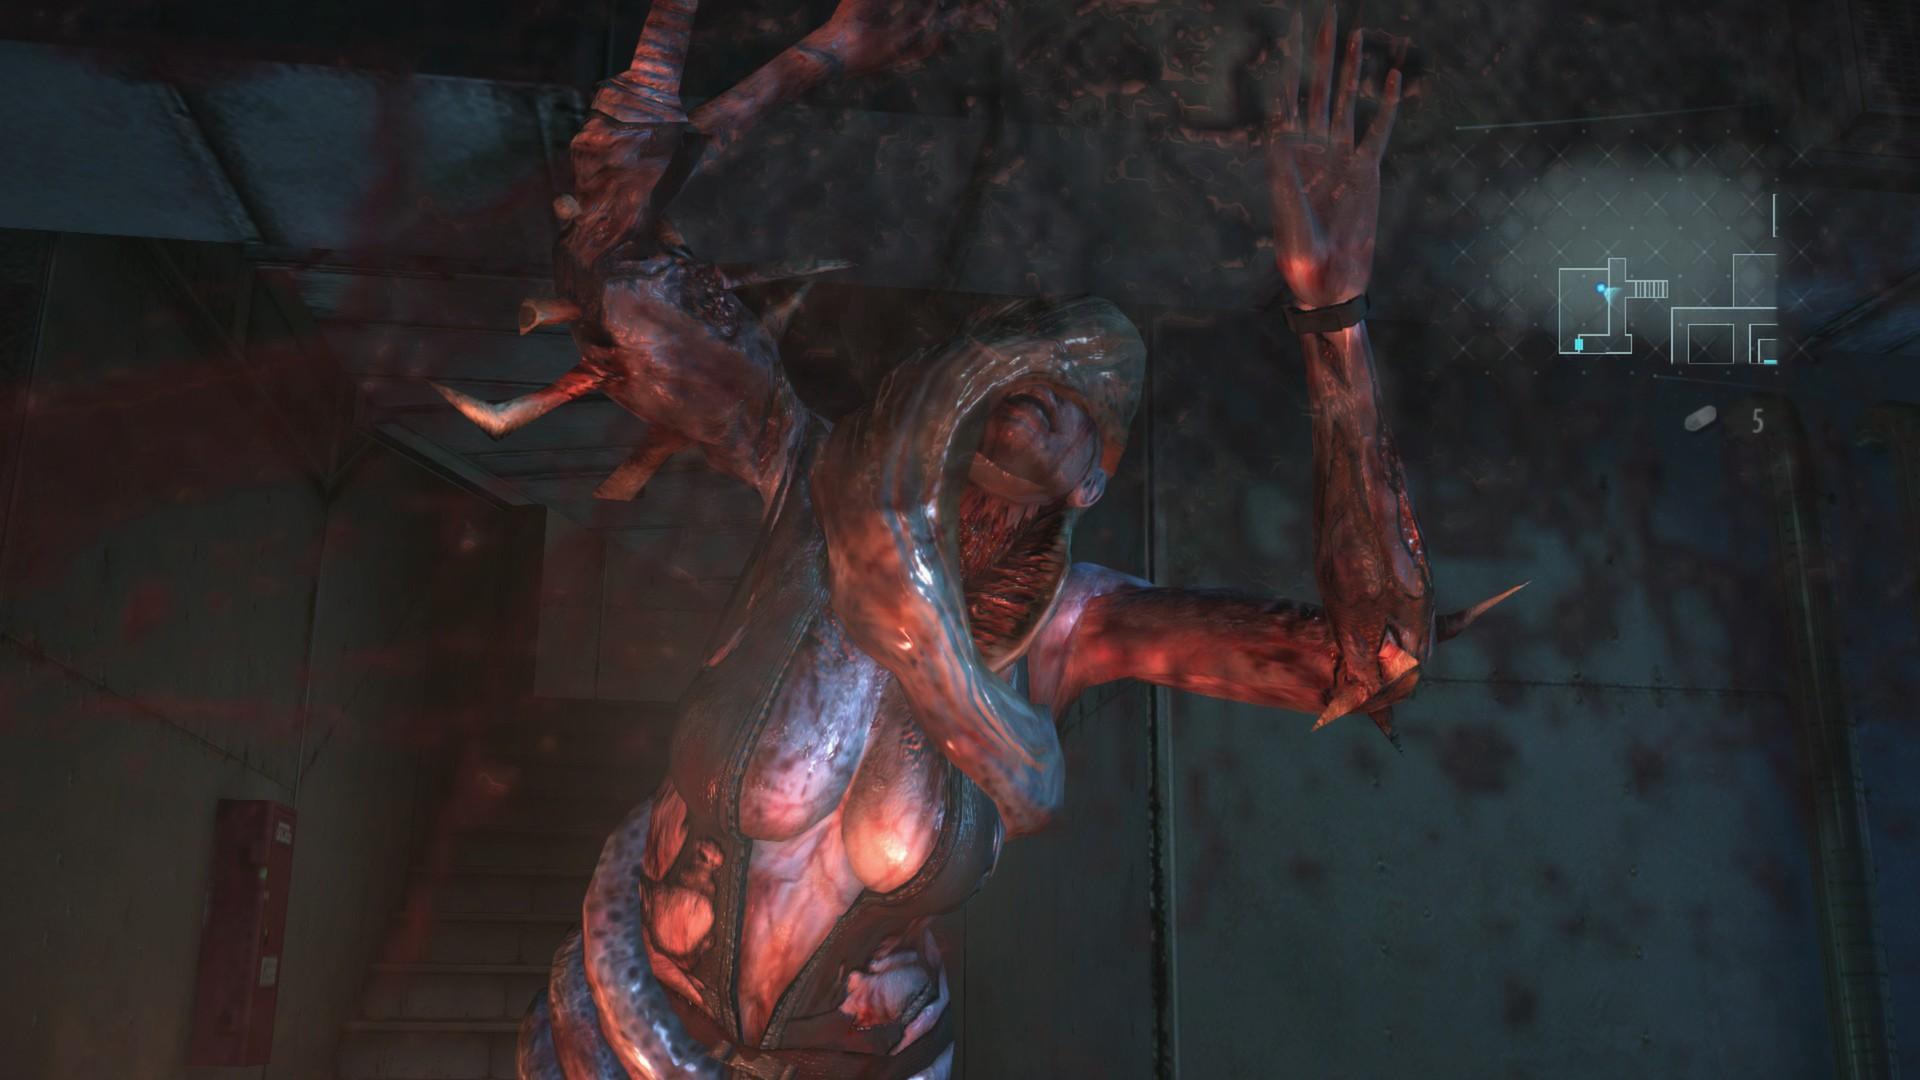 Screenshot №12 from game Resident Evil Revelations